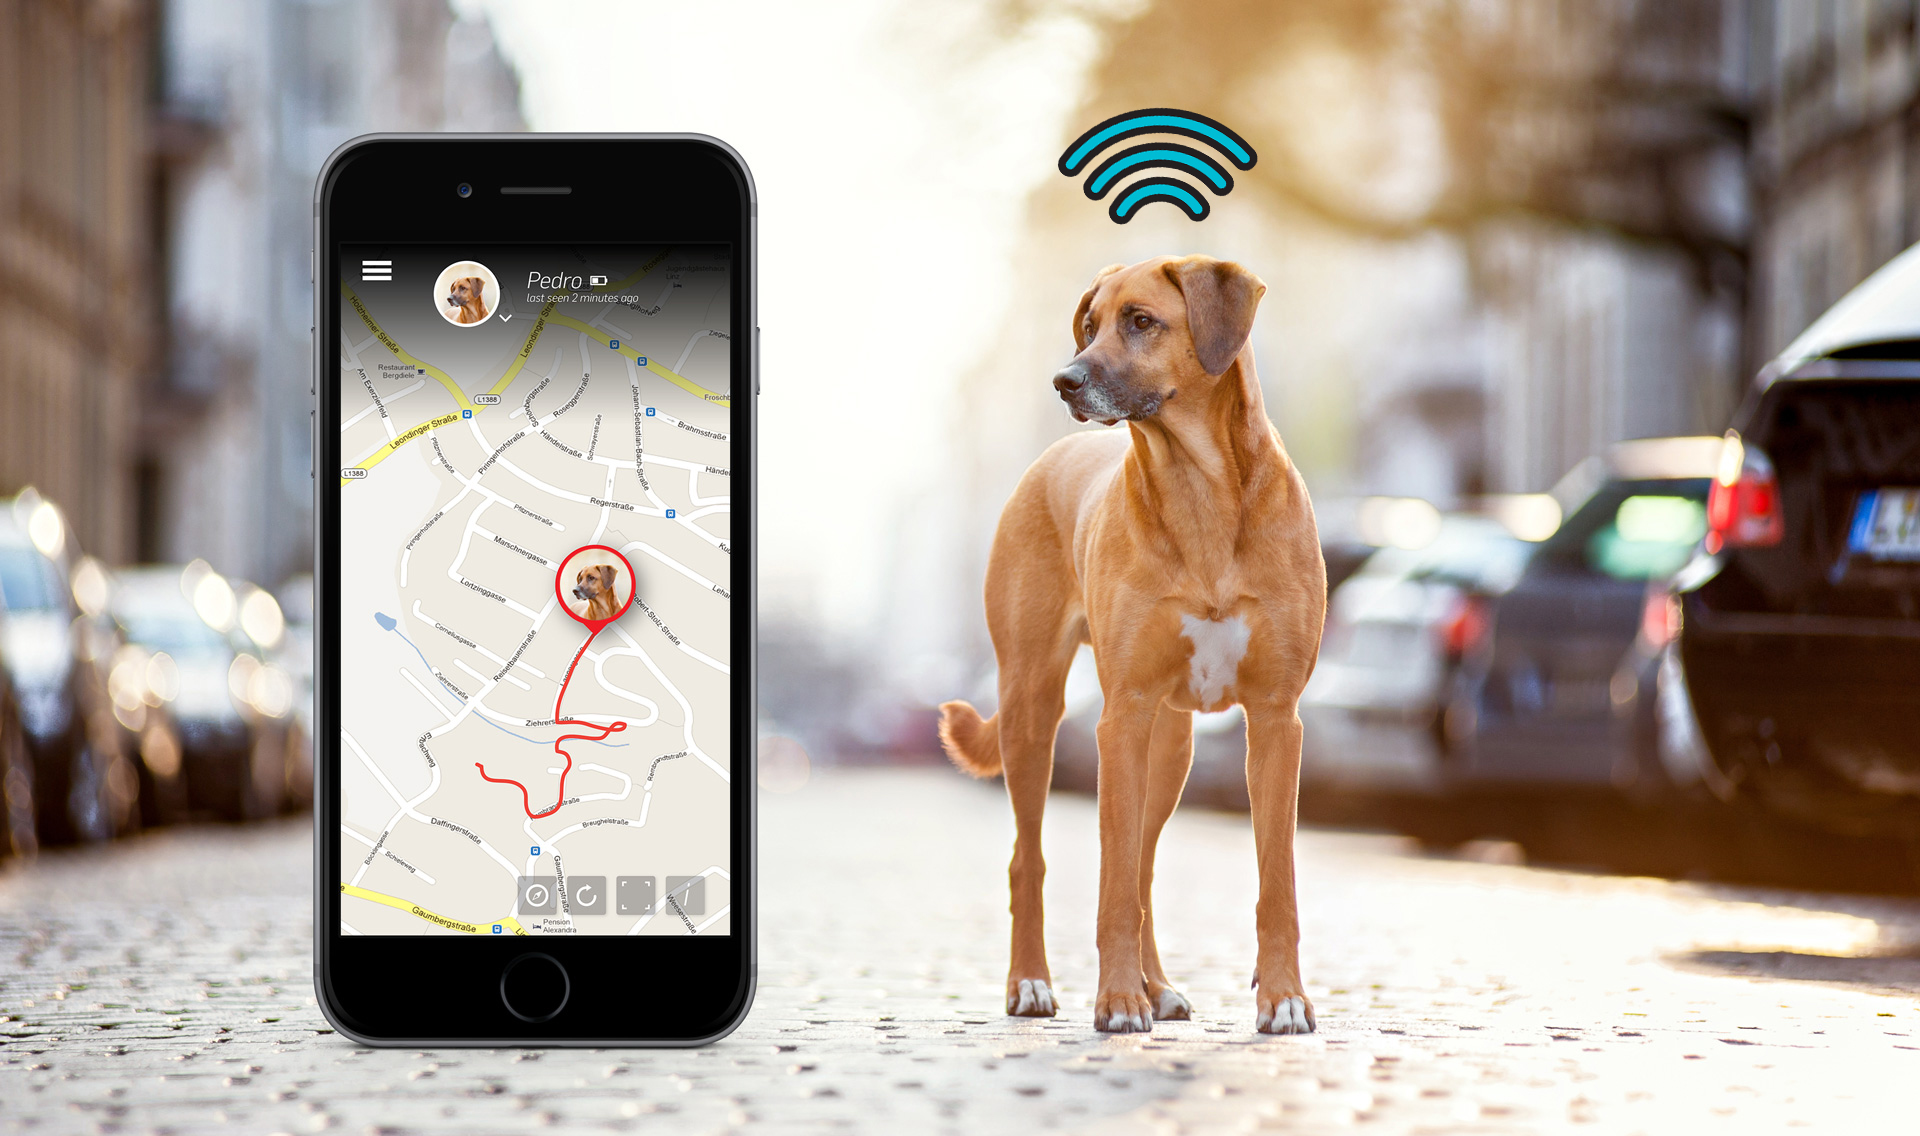 Rastreador GPS para vehículos – Mini GPS magnético localizador de coche en  tiempo real resistente a la intemperie, larga espera GSM SIM GPS Tracker